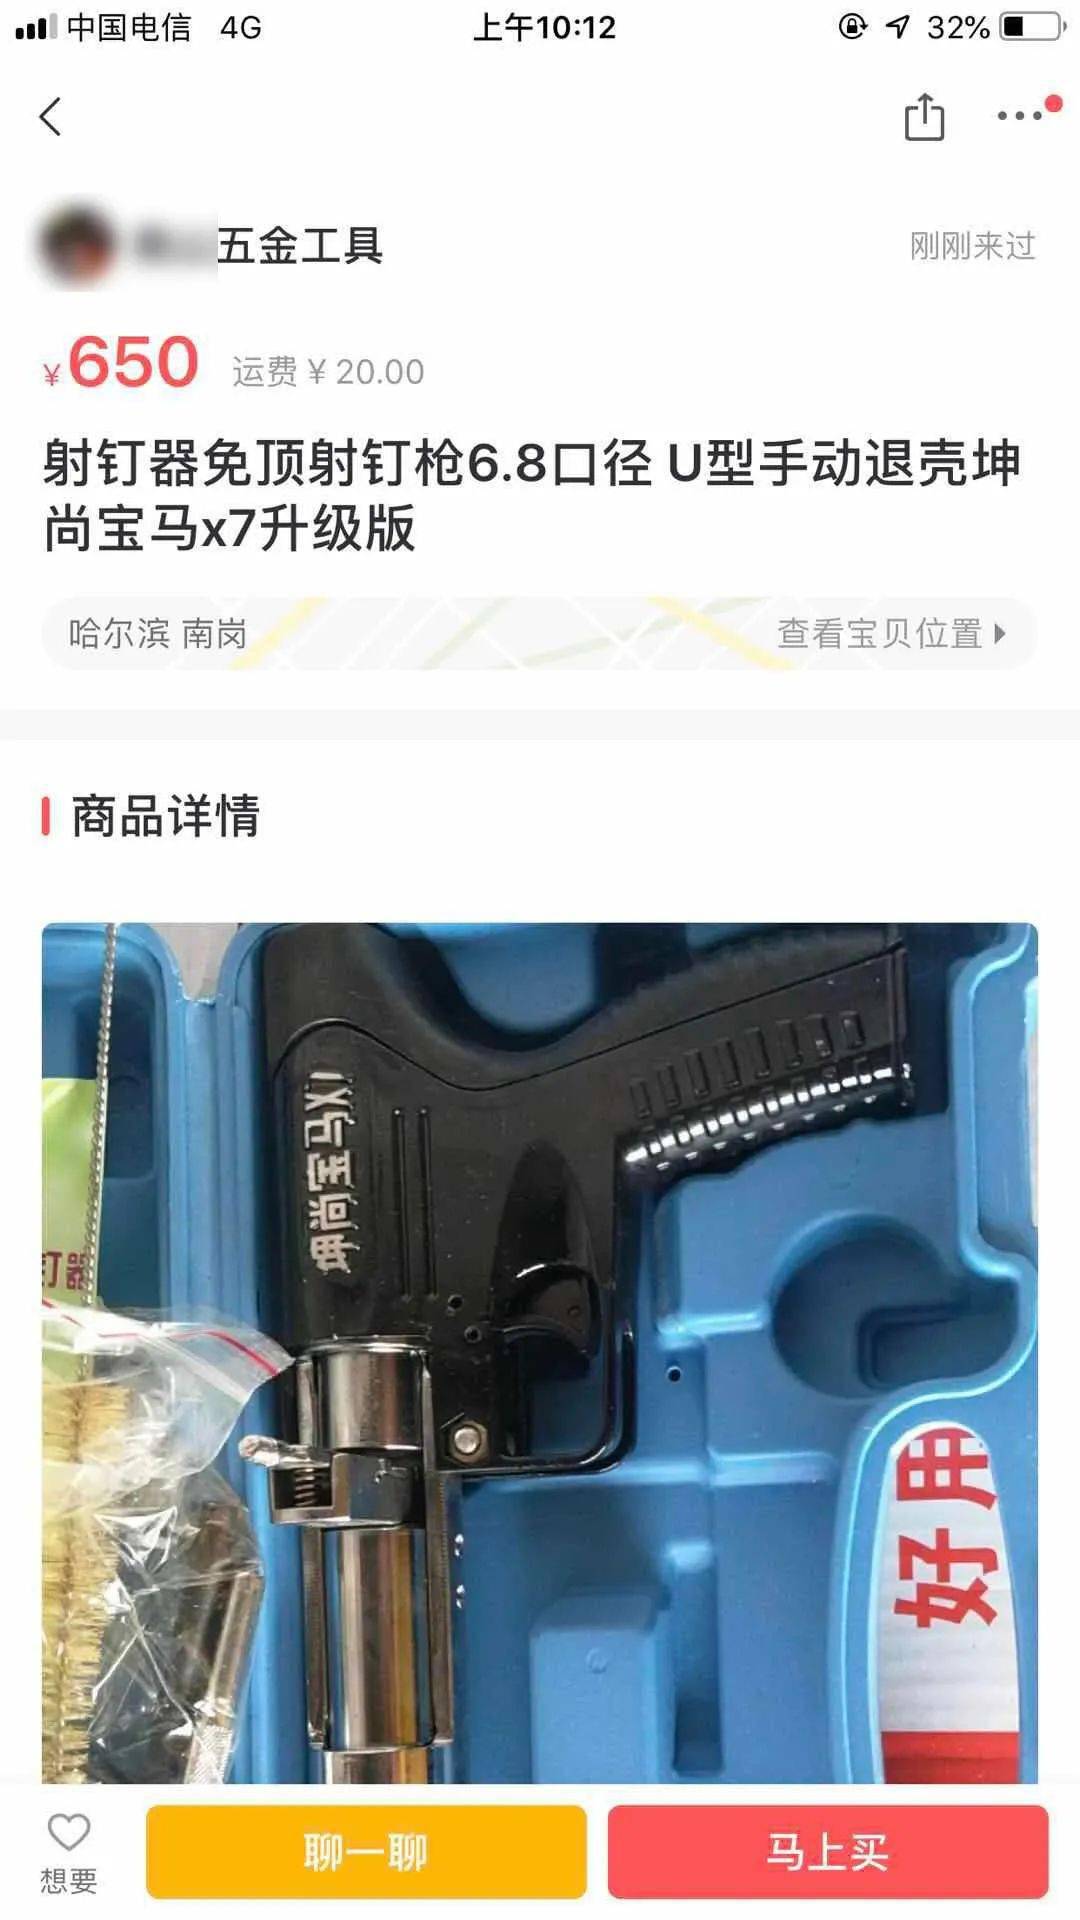 有人通过网络非法渠道,购买一款名为"坤尚宝马x7免顶射钉器"的射钉枪